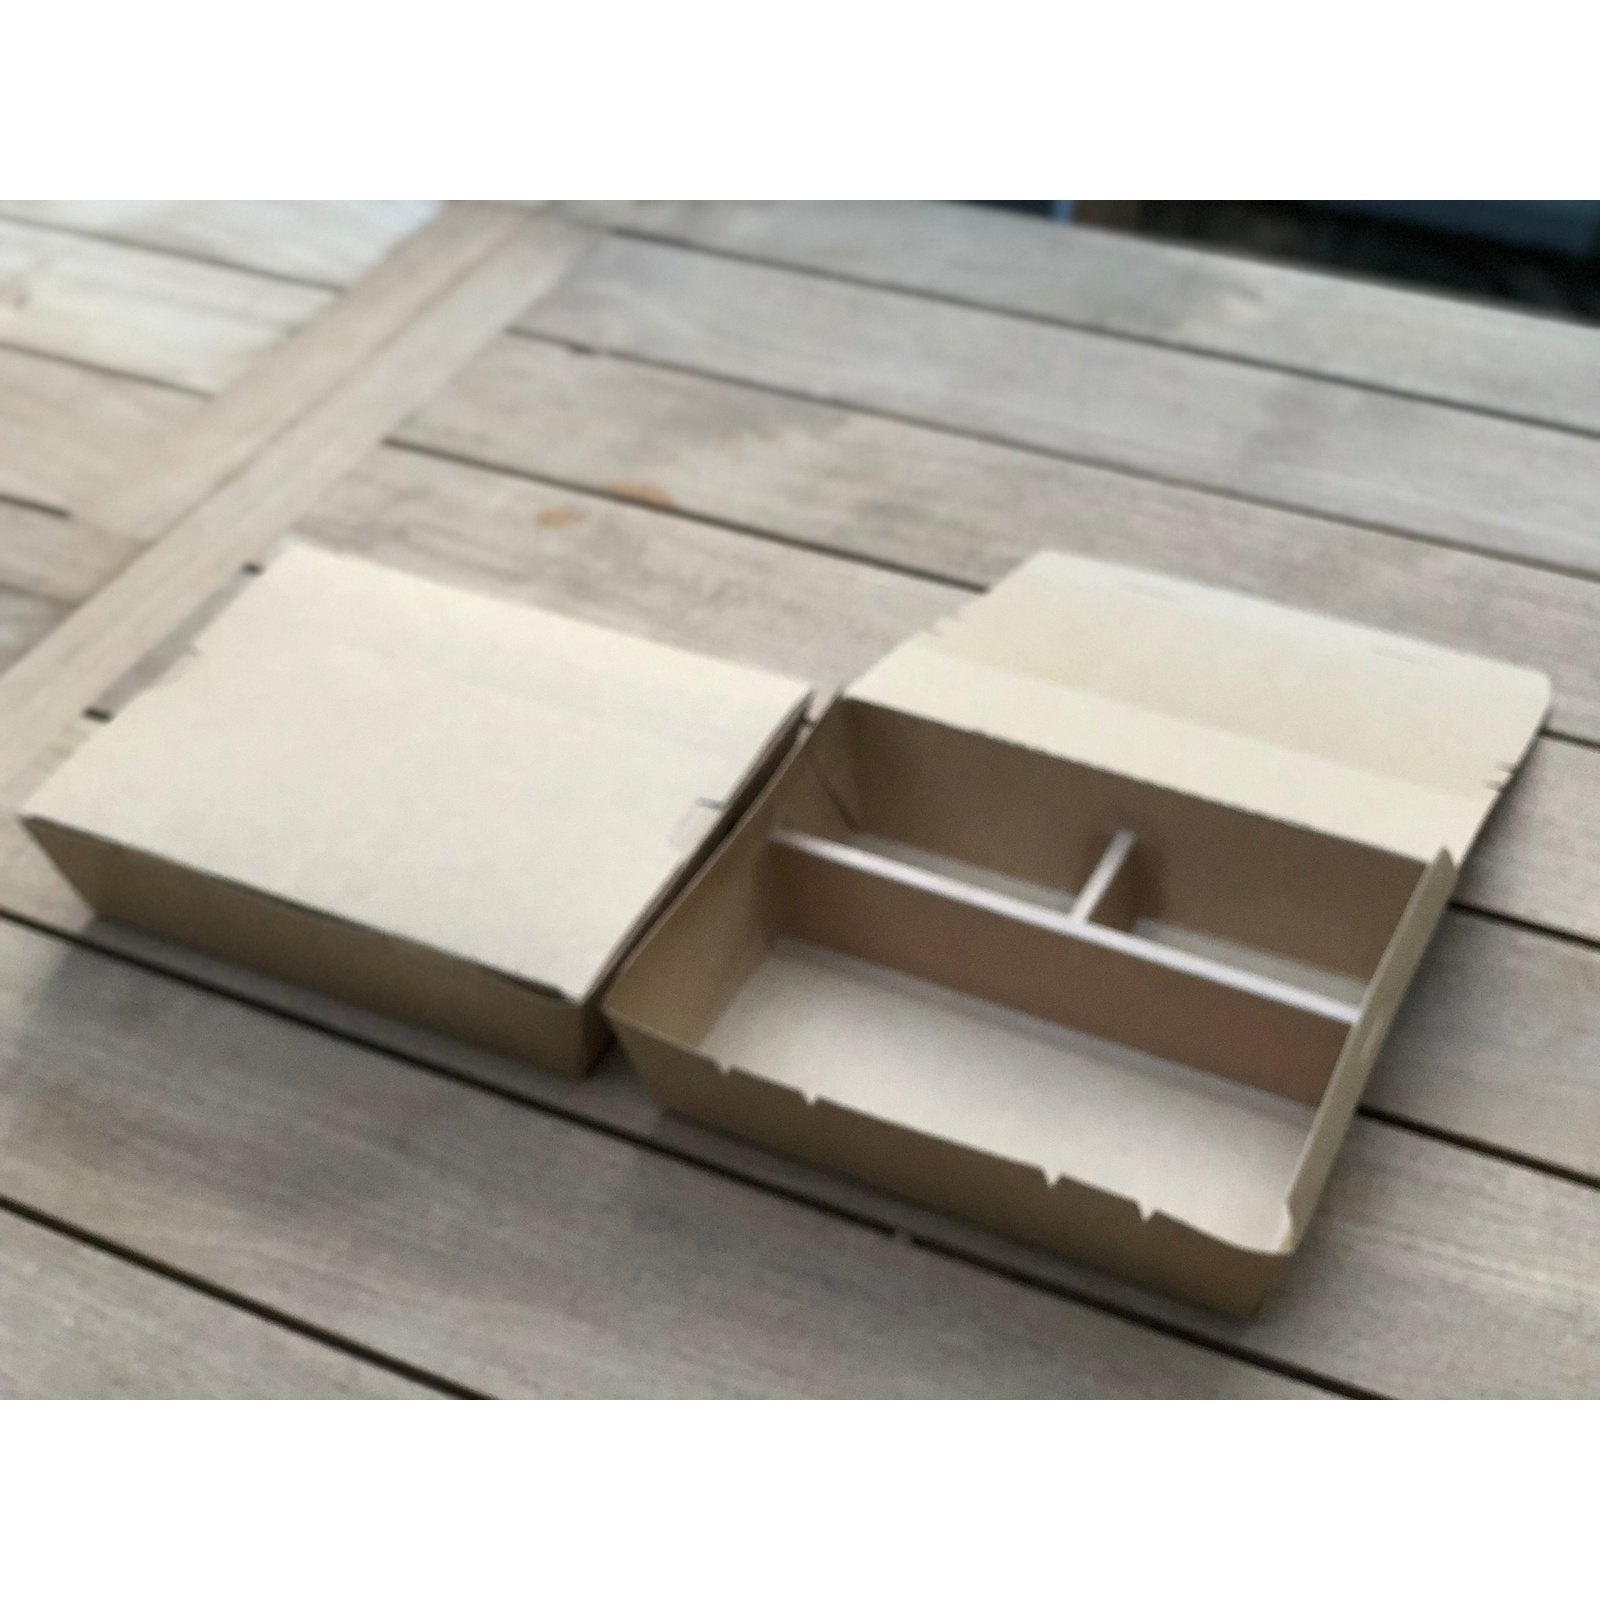 🌱 BENTO BOX effet bois + Couverts - Écologique et Réutilisable